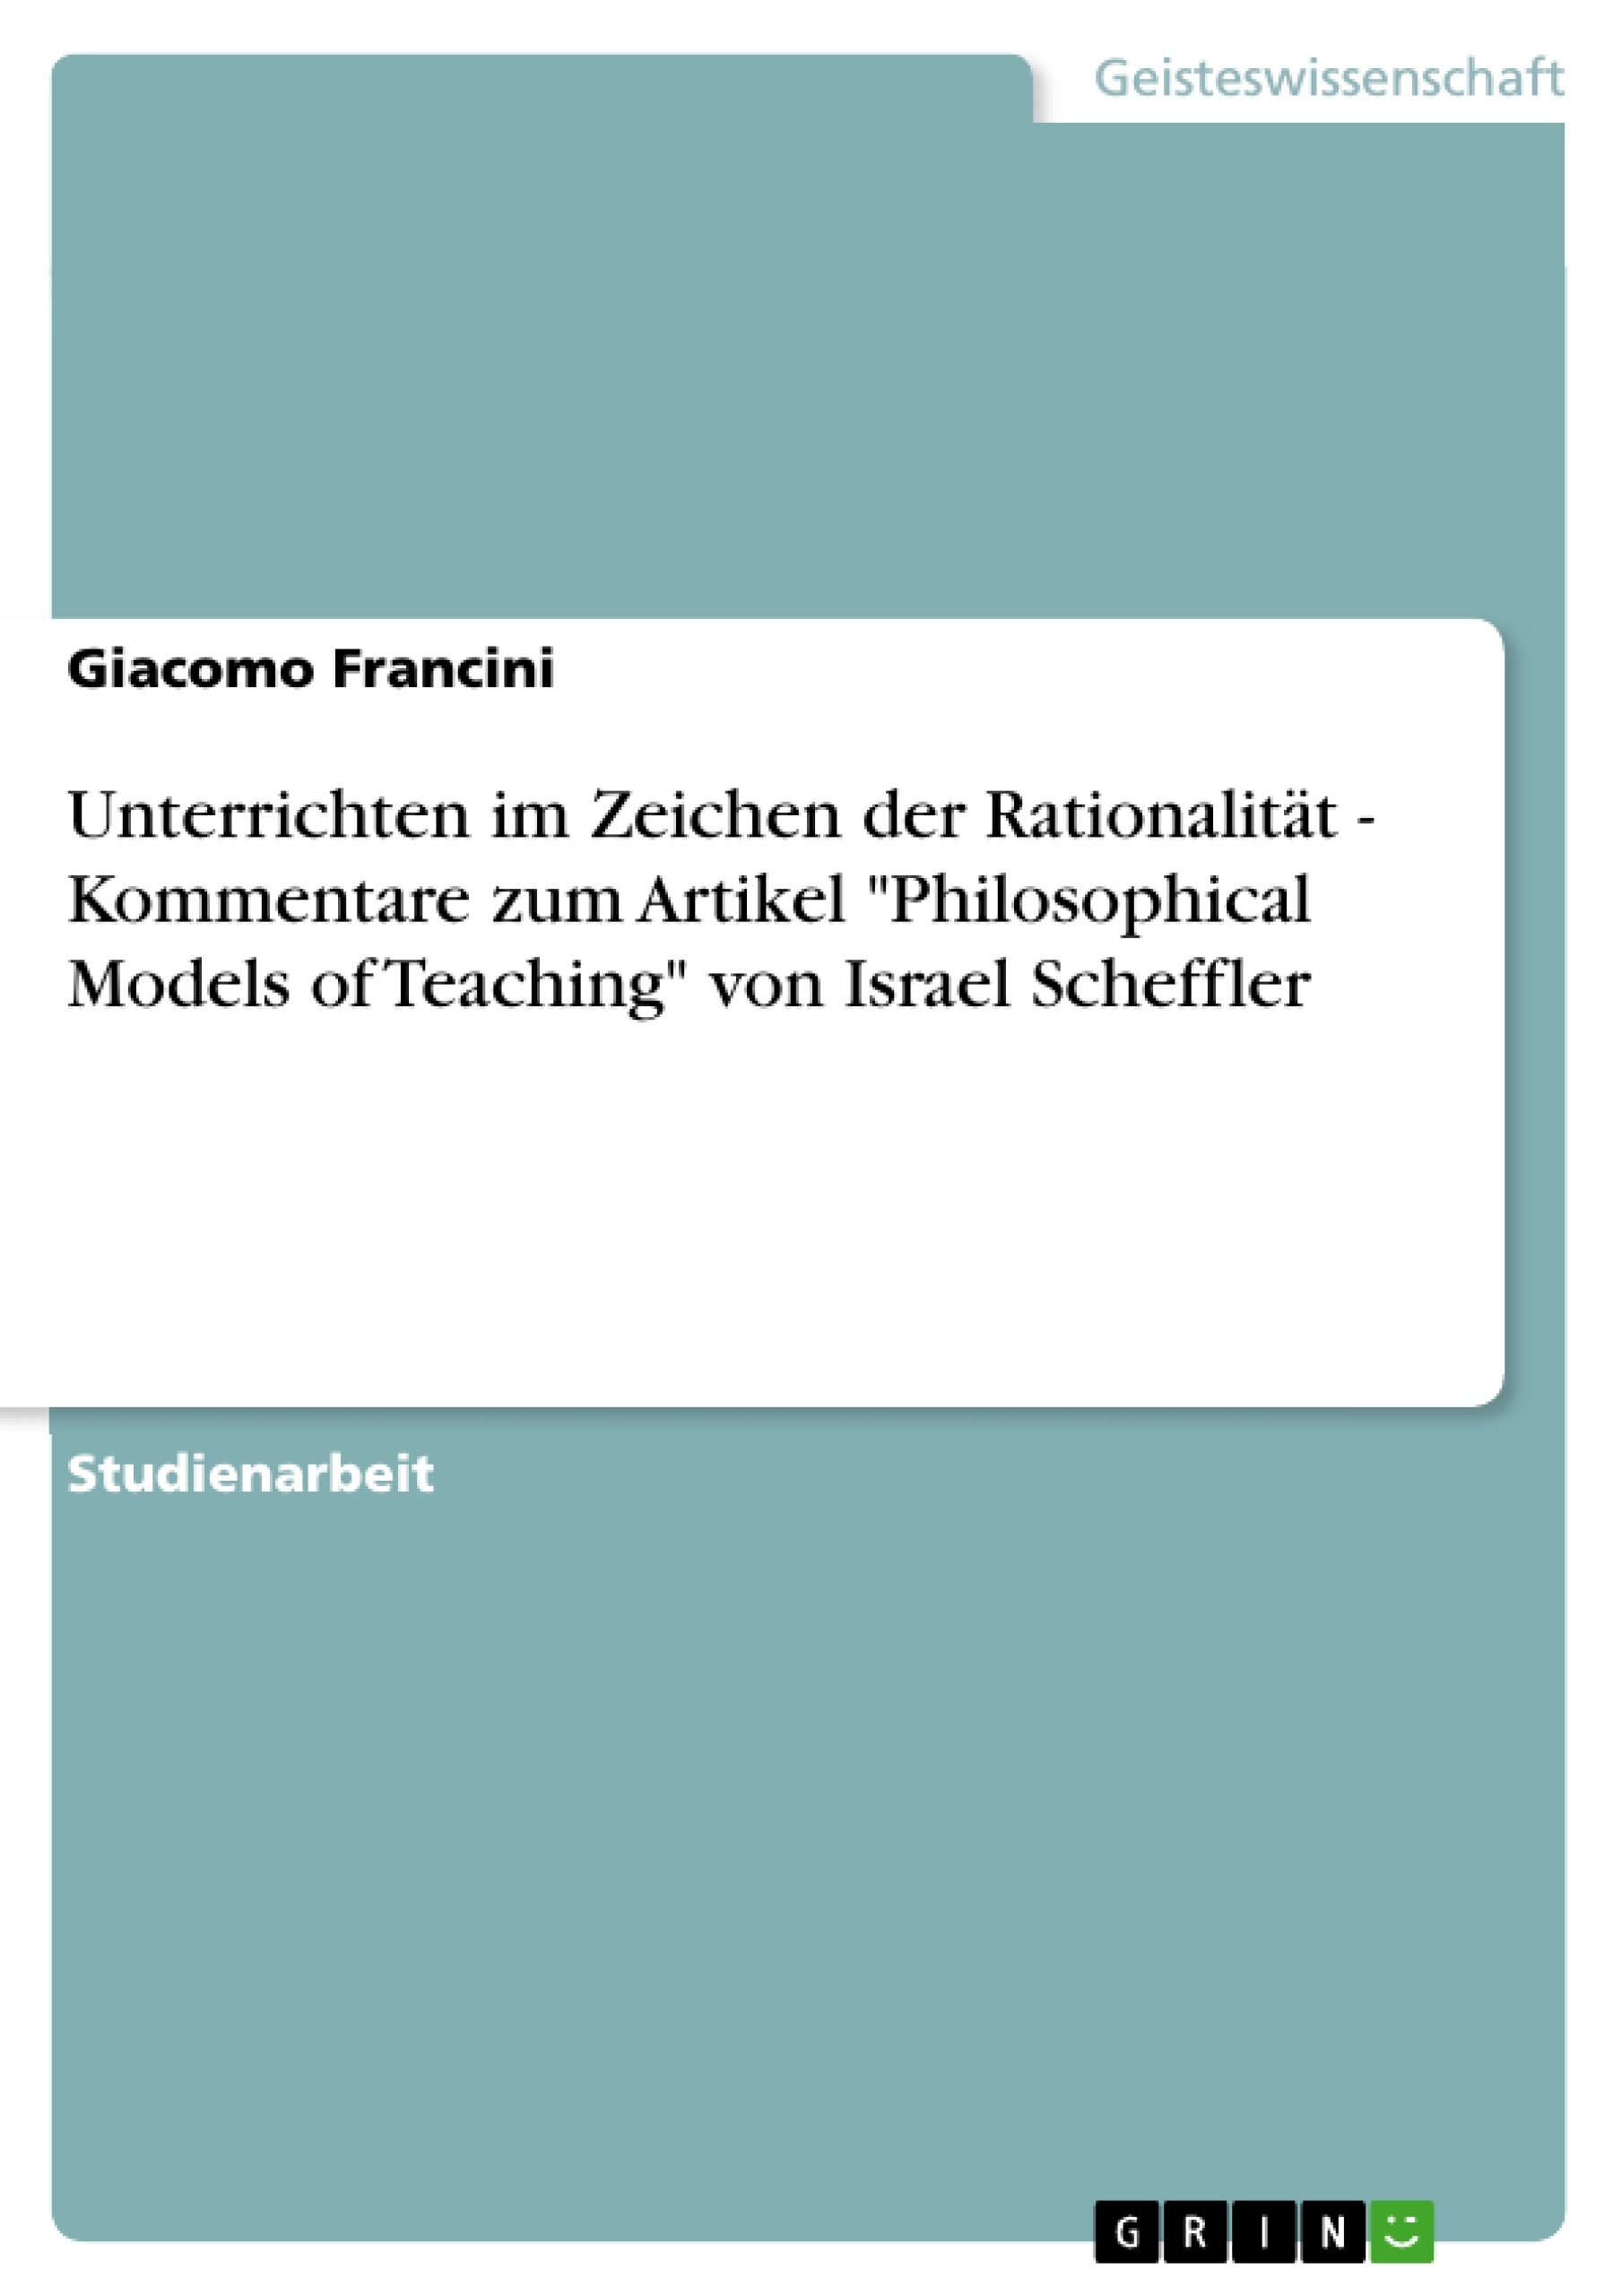 Titel: Unterrichten im Zeichen der Rationalität - Kommentare zum Artikel "Philosophical Models of Teaching" von Israel Scheffler